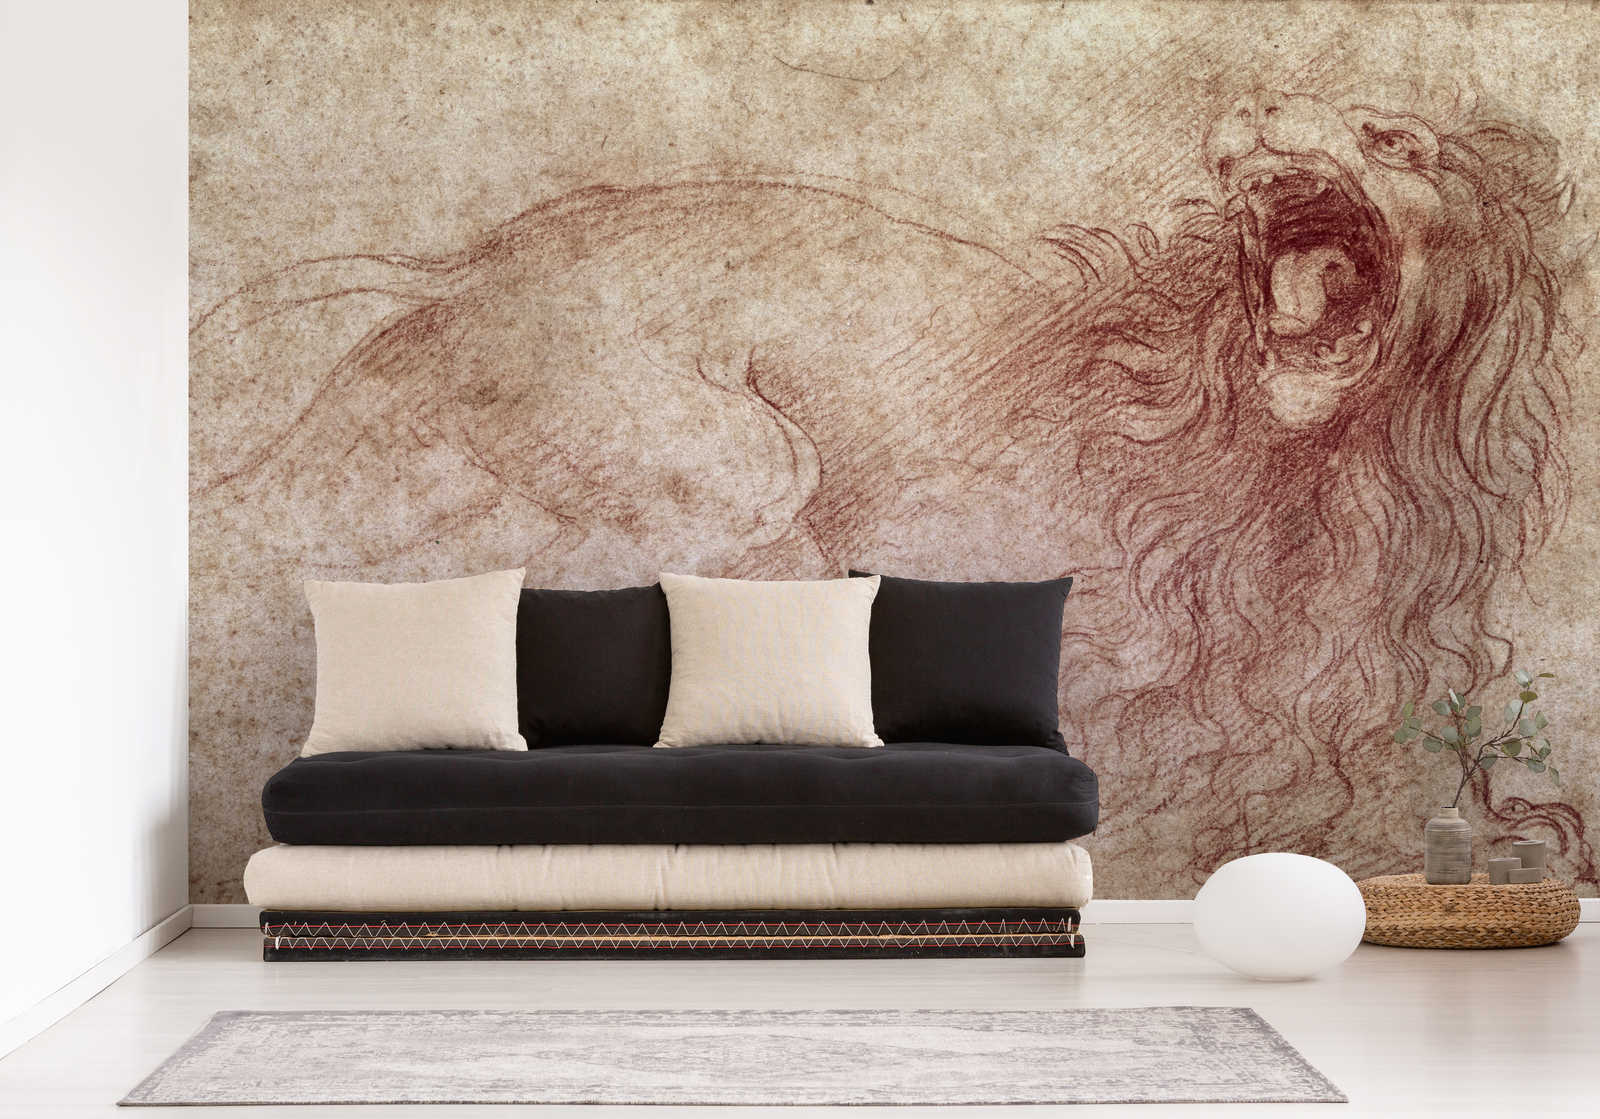             Papier peint panoramique "Esquisse d'un lion rugissant" de Léonard de Vinci
        